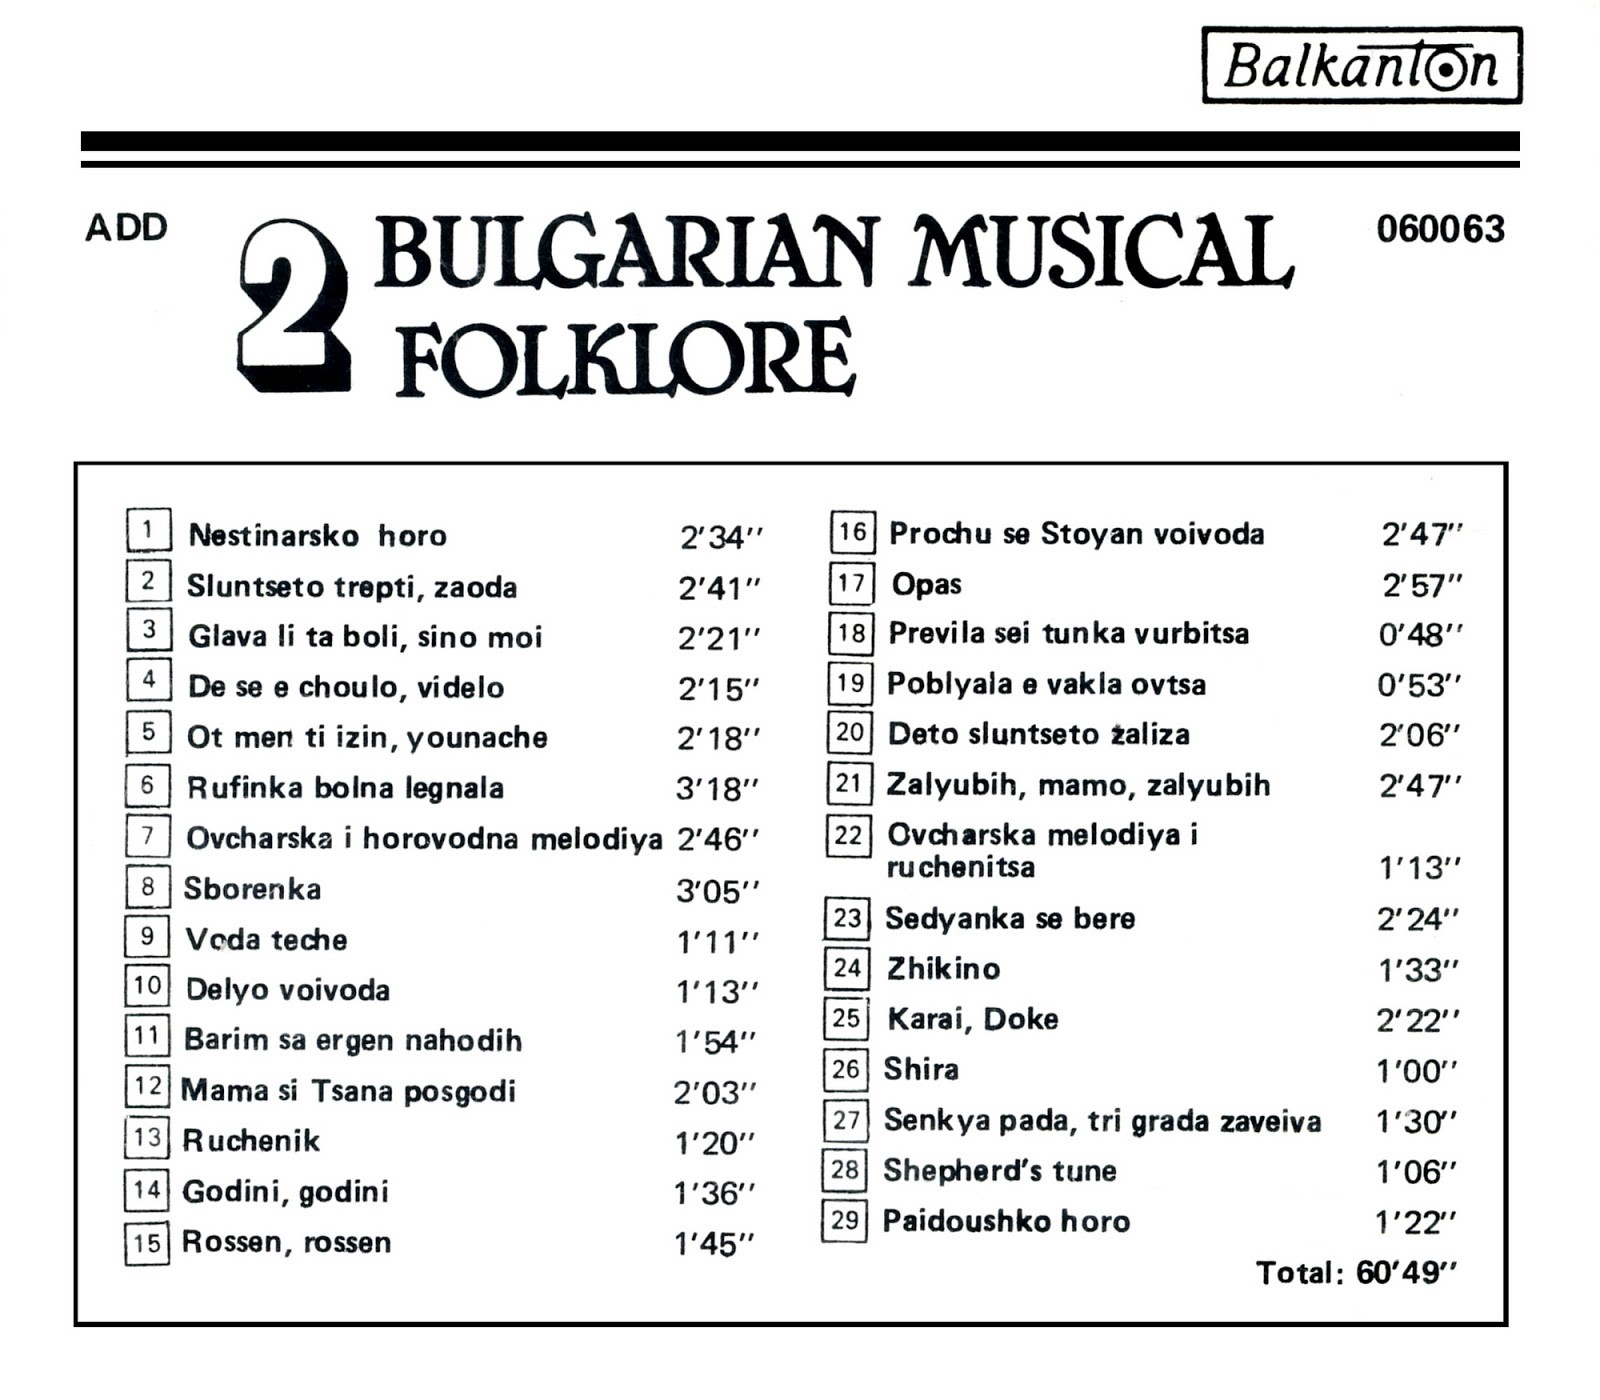 Bulgarian Musical Folklore (2)